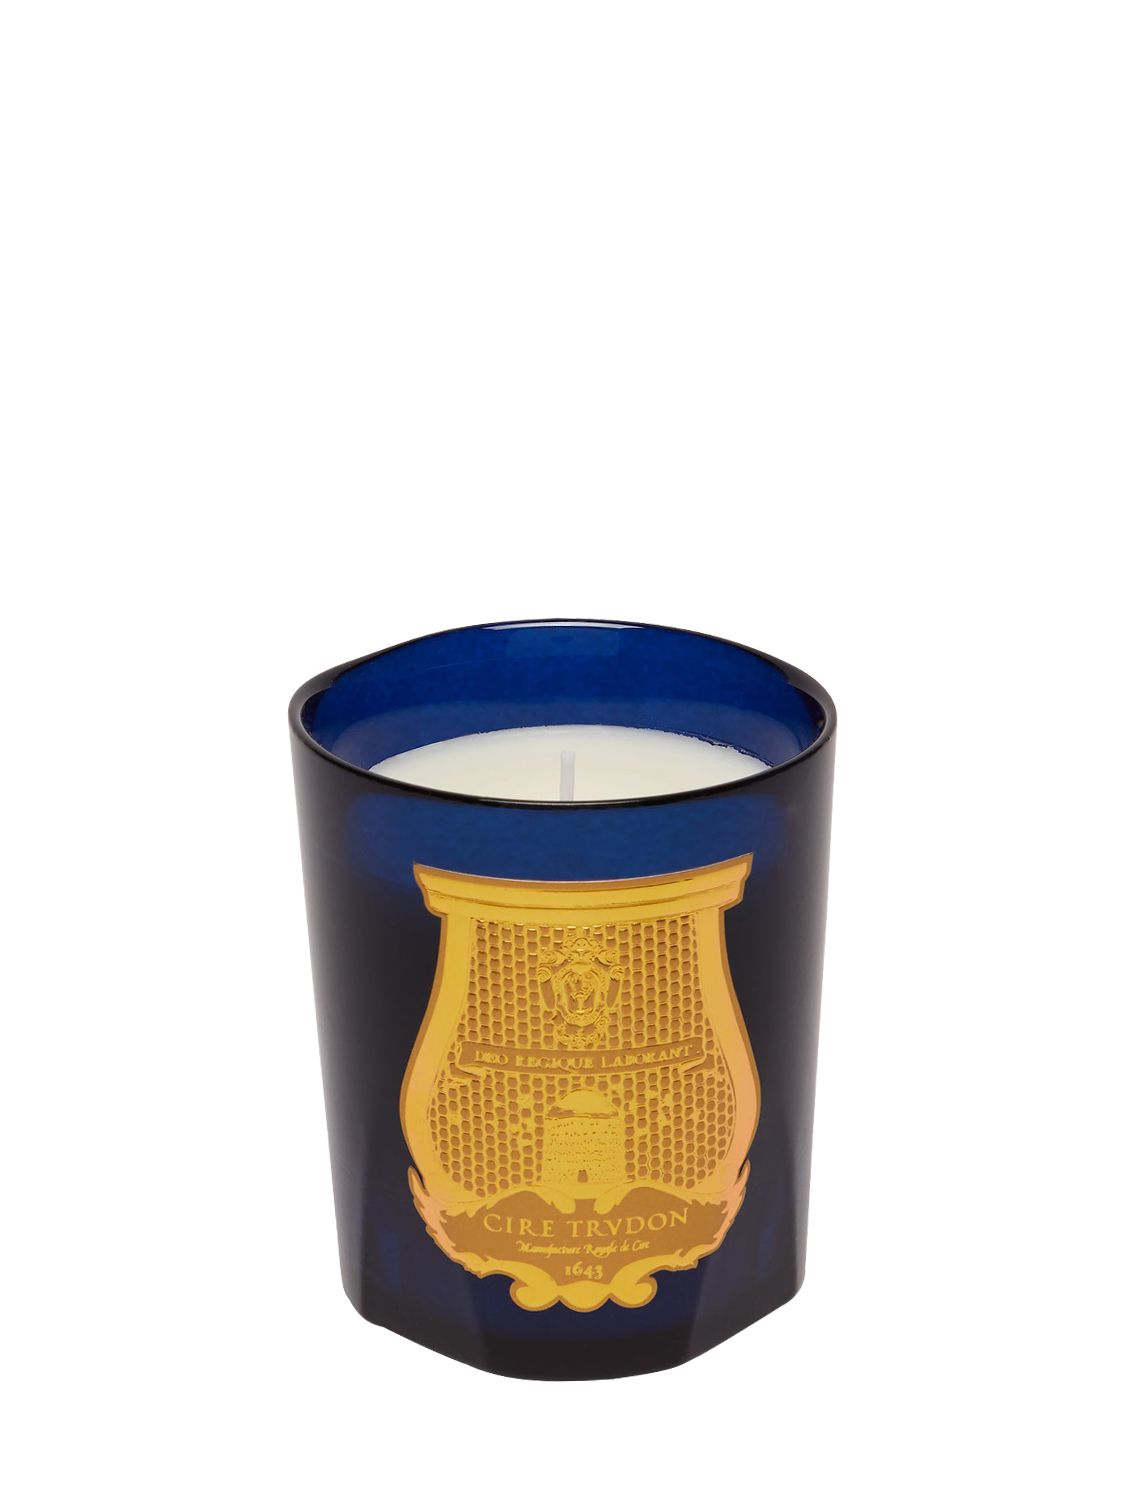 Trudon Reggio Classic Scented Candle In Blue,gold